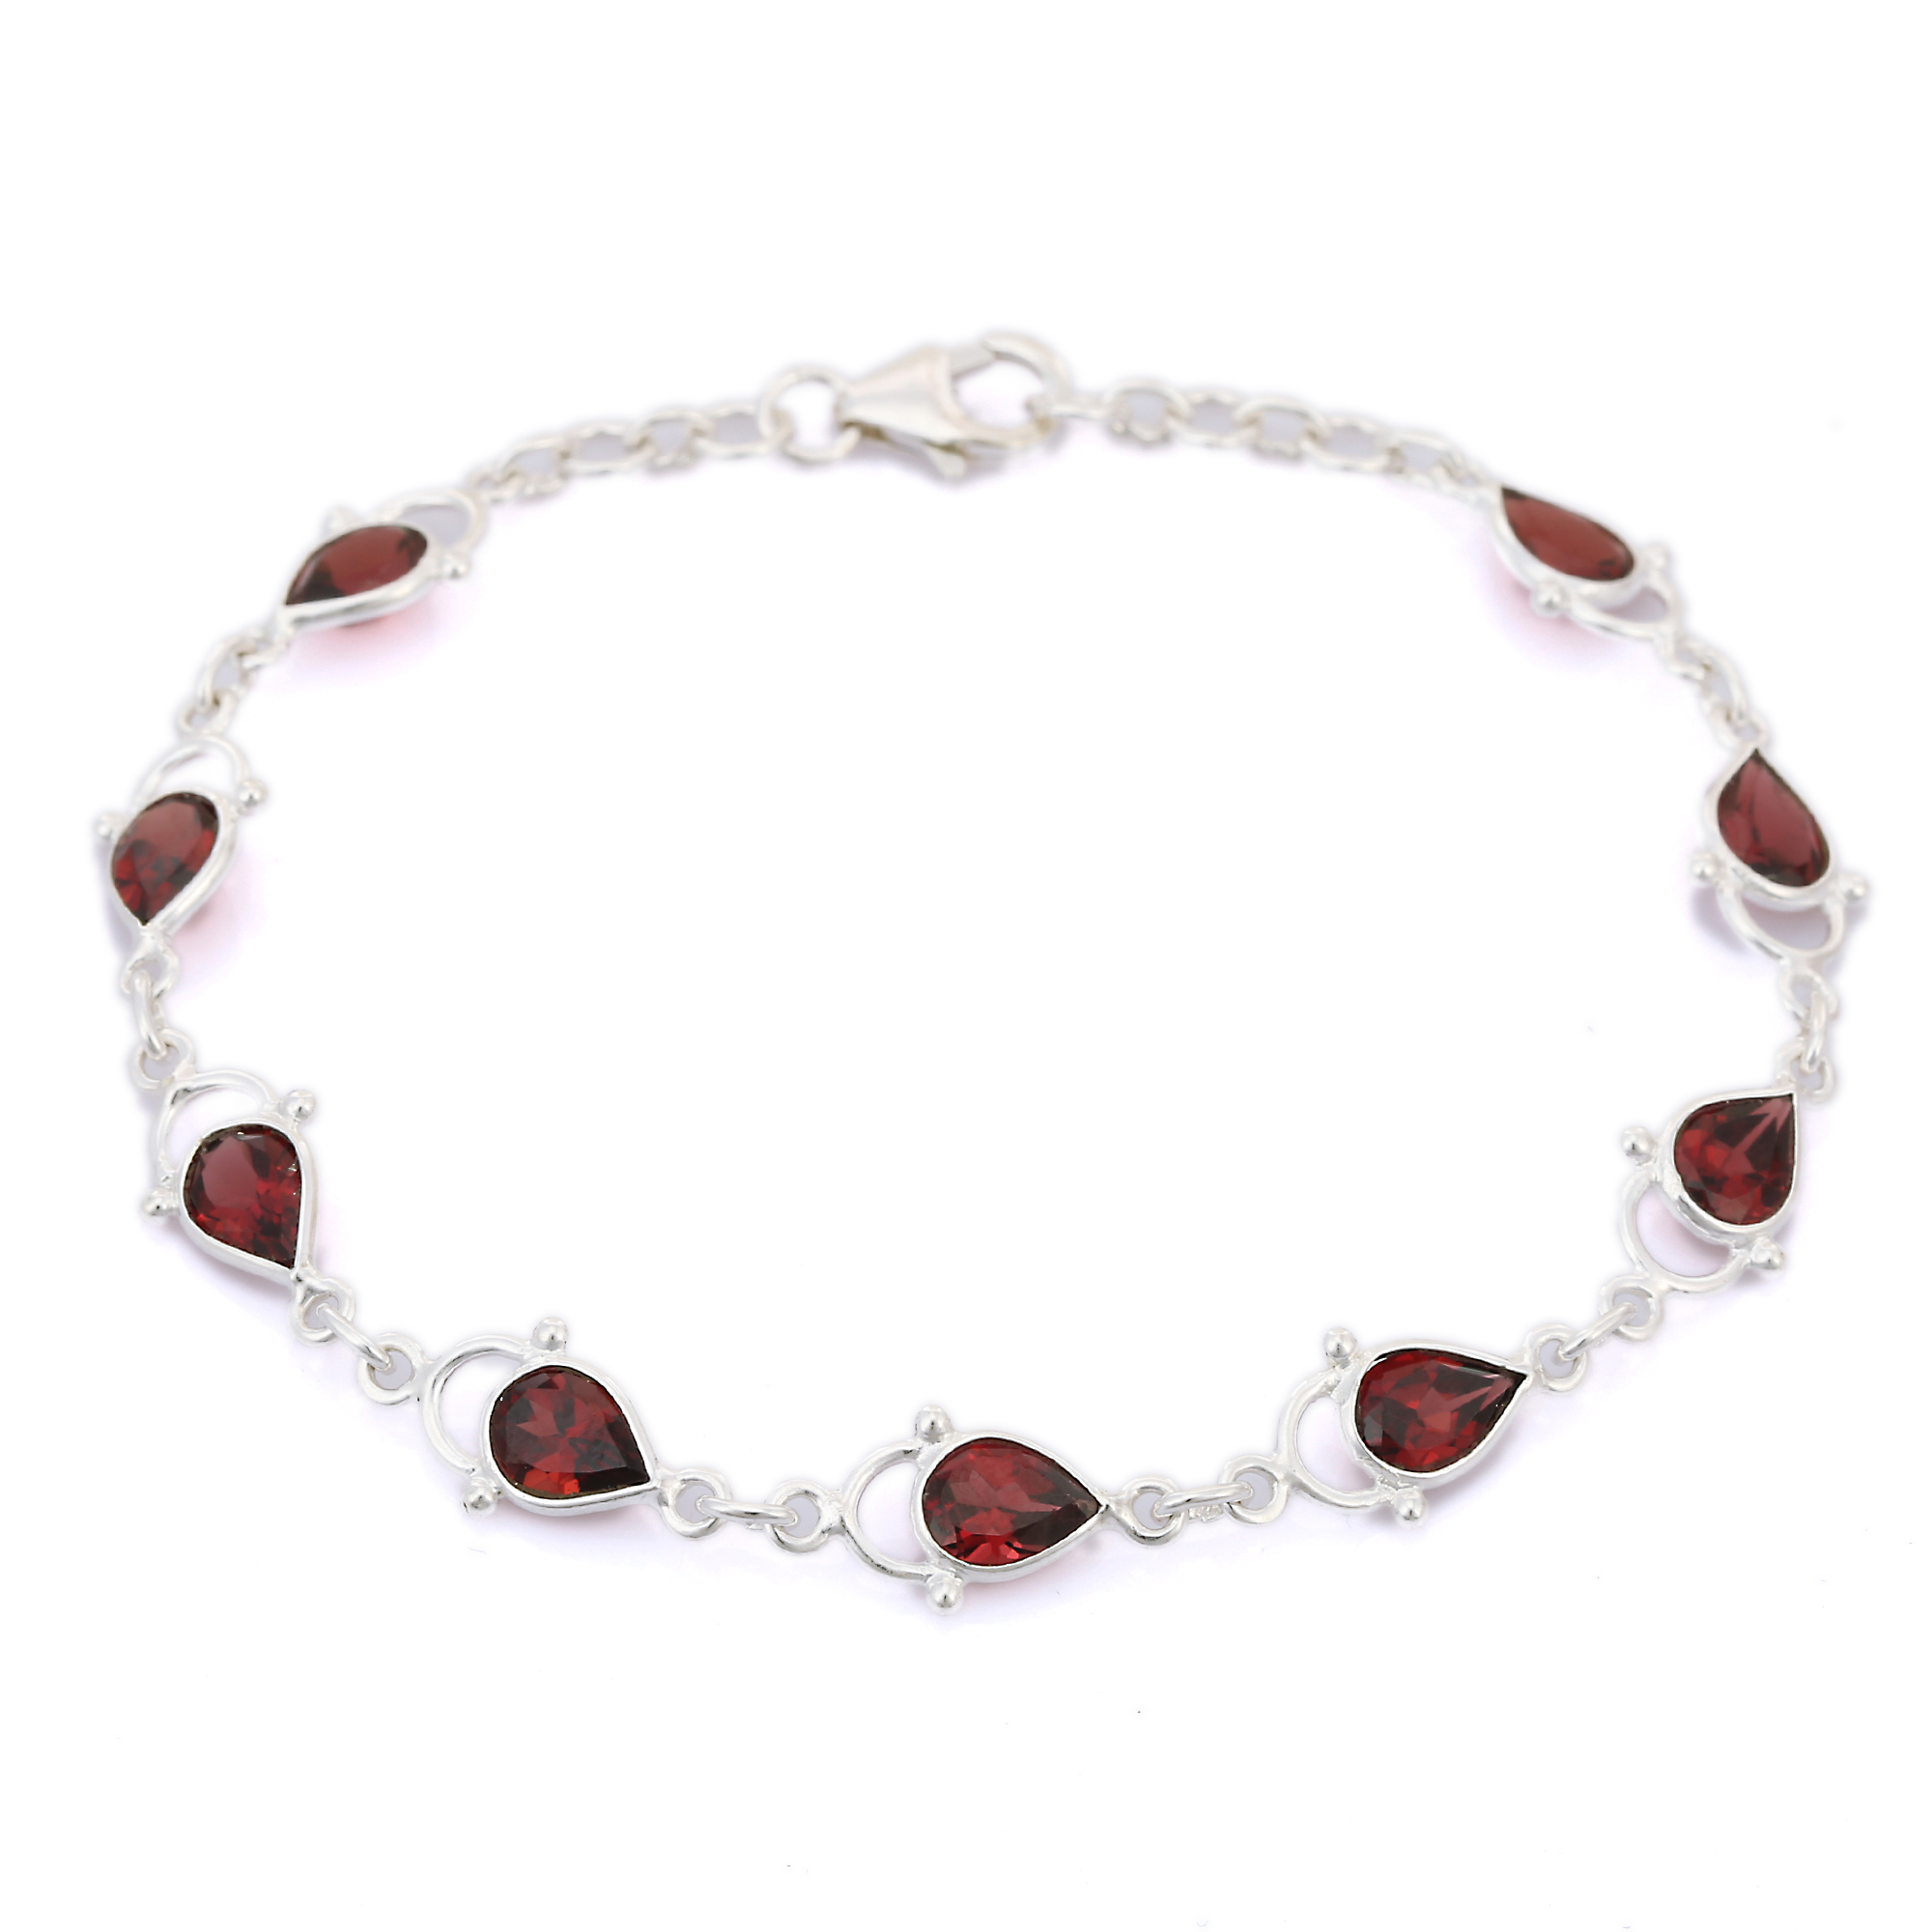 Onyx and Red Snakeskin Jasper 'Protected' Gemstone Beaded Bracelet